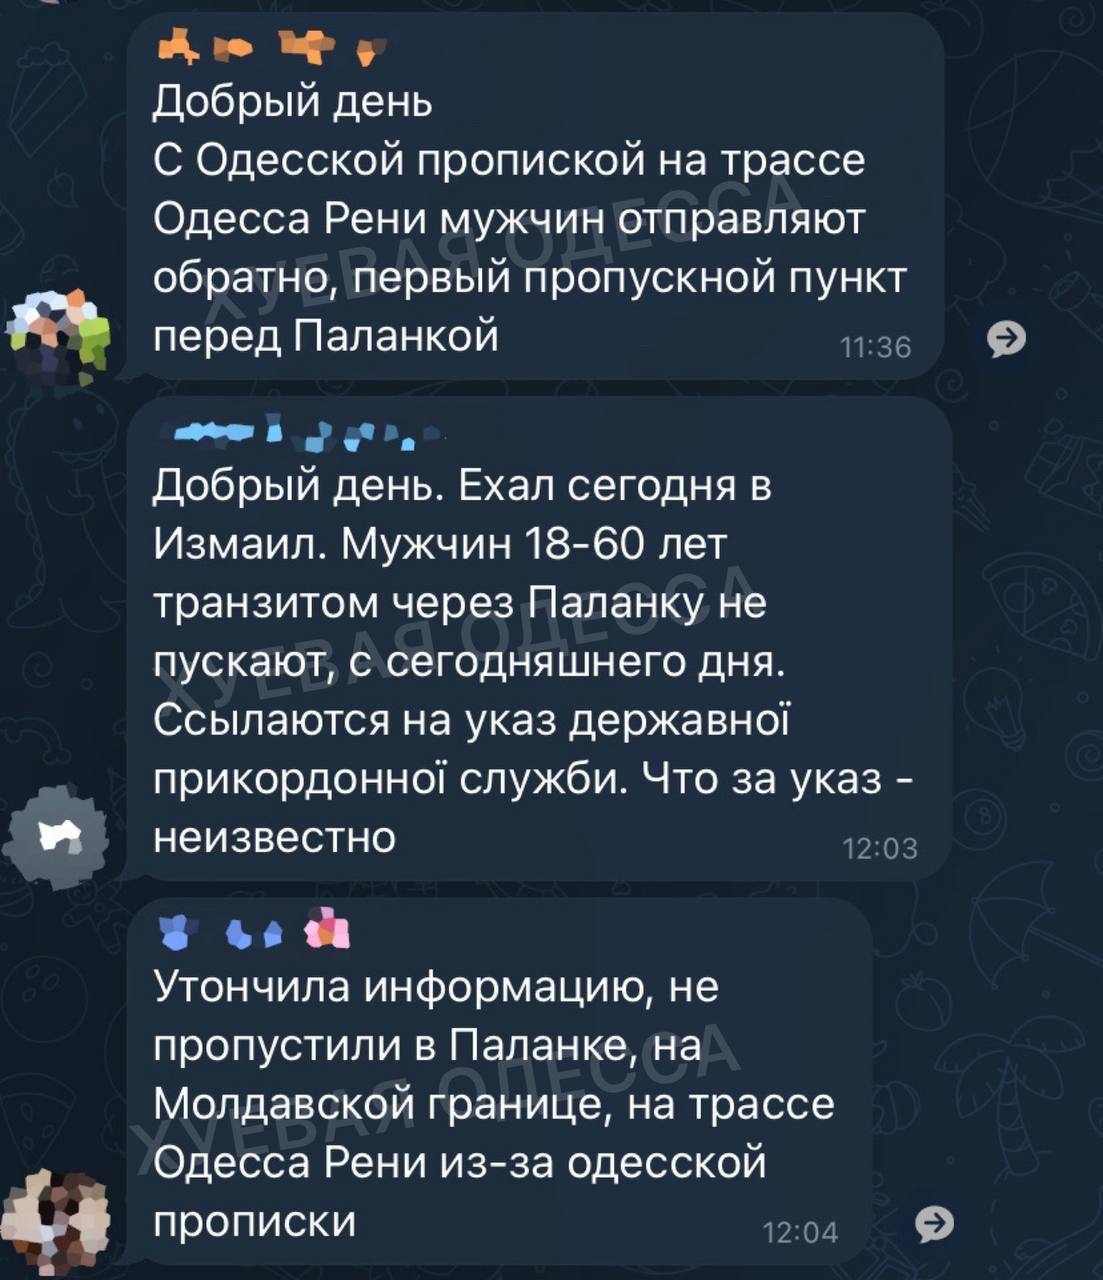 Пограничники не пропускают «подозрительных мужчин призывного возраста» через транзитный участок трассы Одесса-Рены